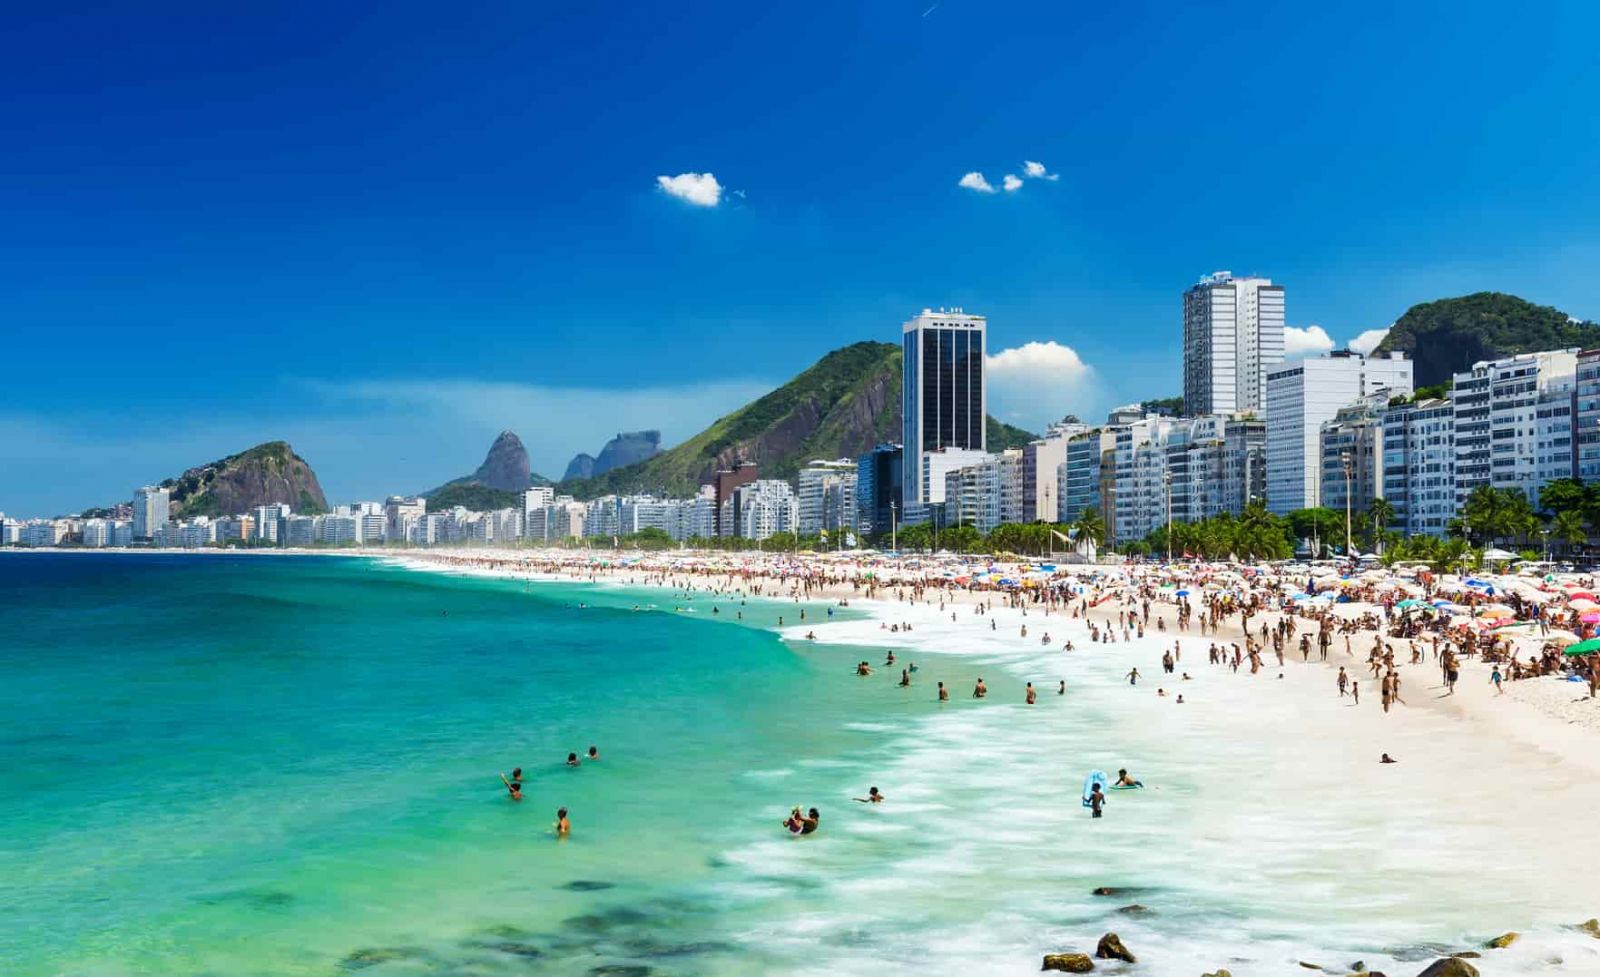 Comprar dólar - Onde comprar dólar barato no Rio de Janeiro